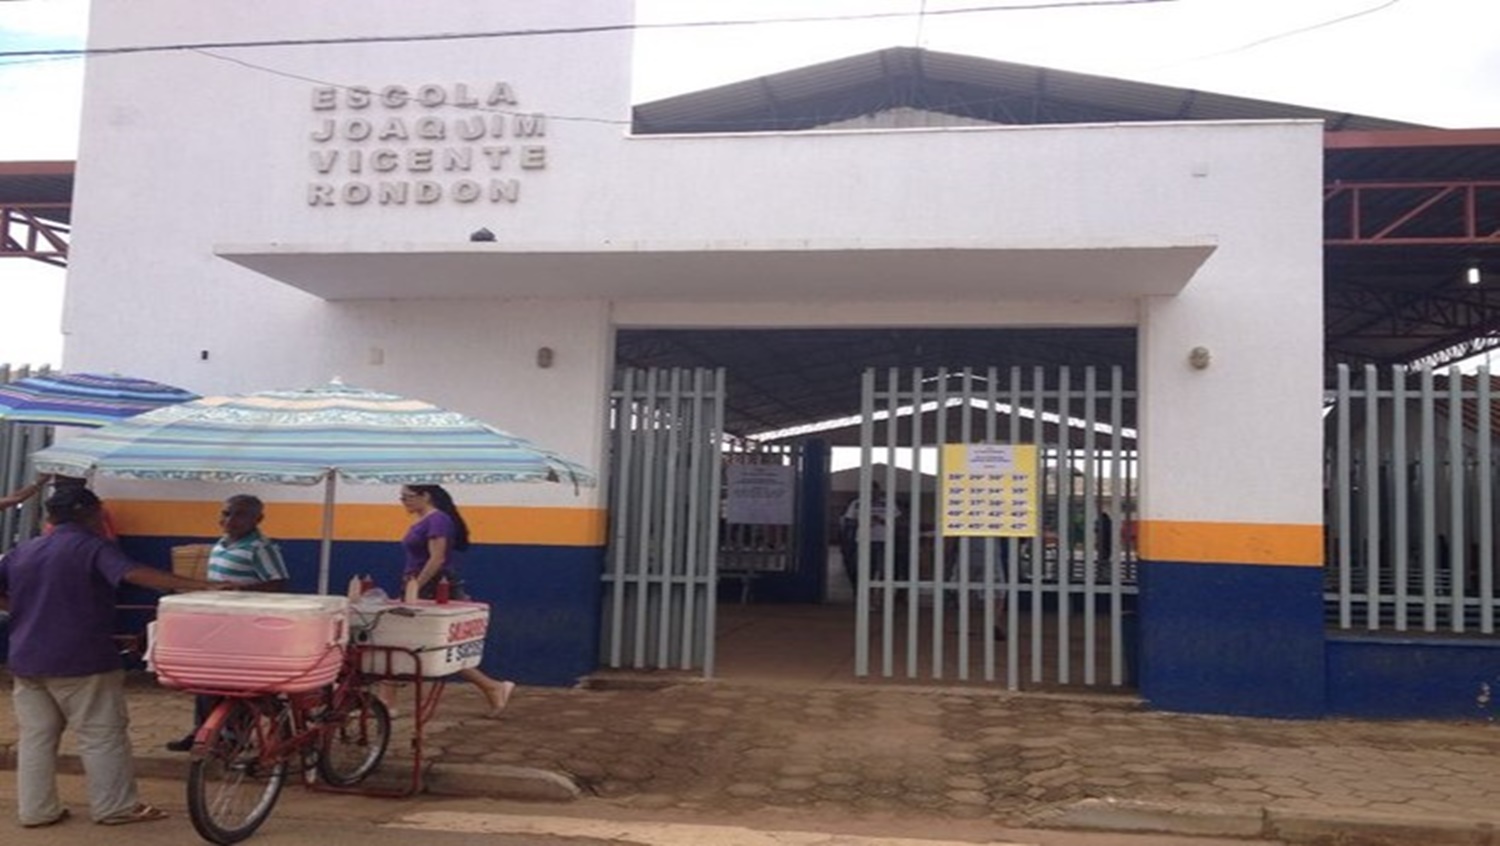 OPORTUNIDADE: Vicente Rondon tem vagas para Educação de Jovens e Adultos